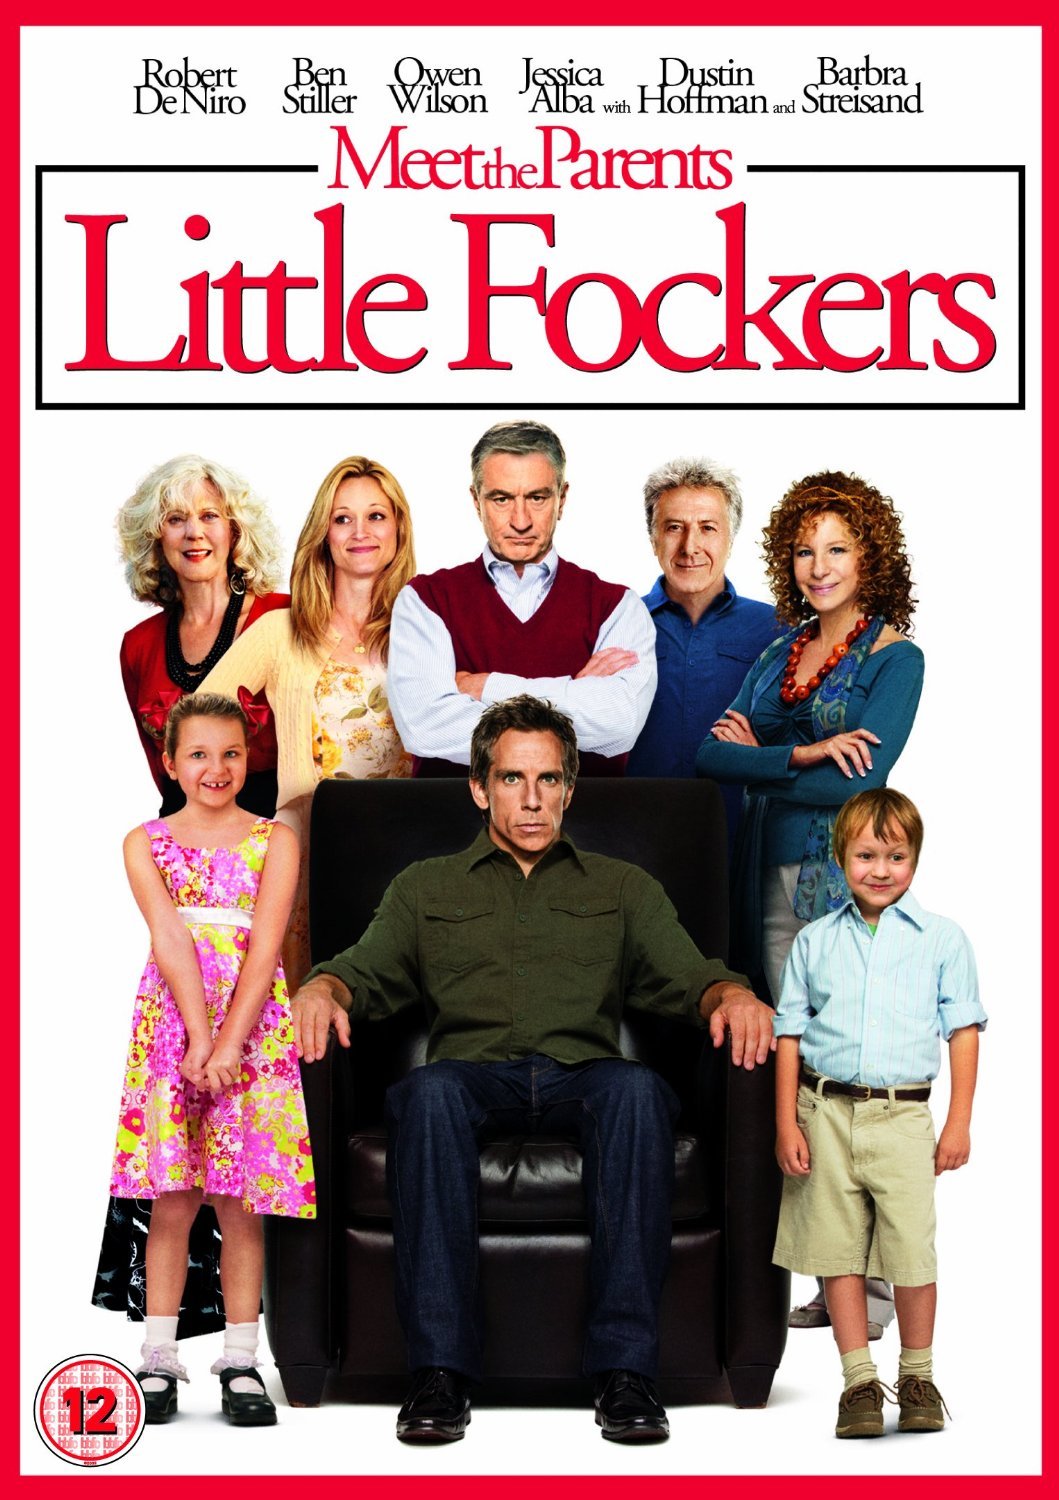 Little Fockers (2010) เขยซ่าส์ หลานเฟี้ยว ขอเปรี้ยวพ่อตา ดูหนังออนไลน์ HD